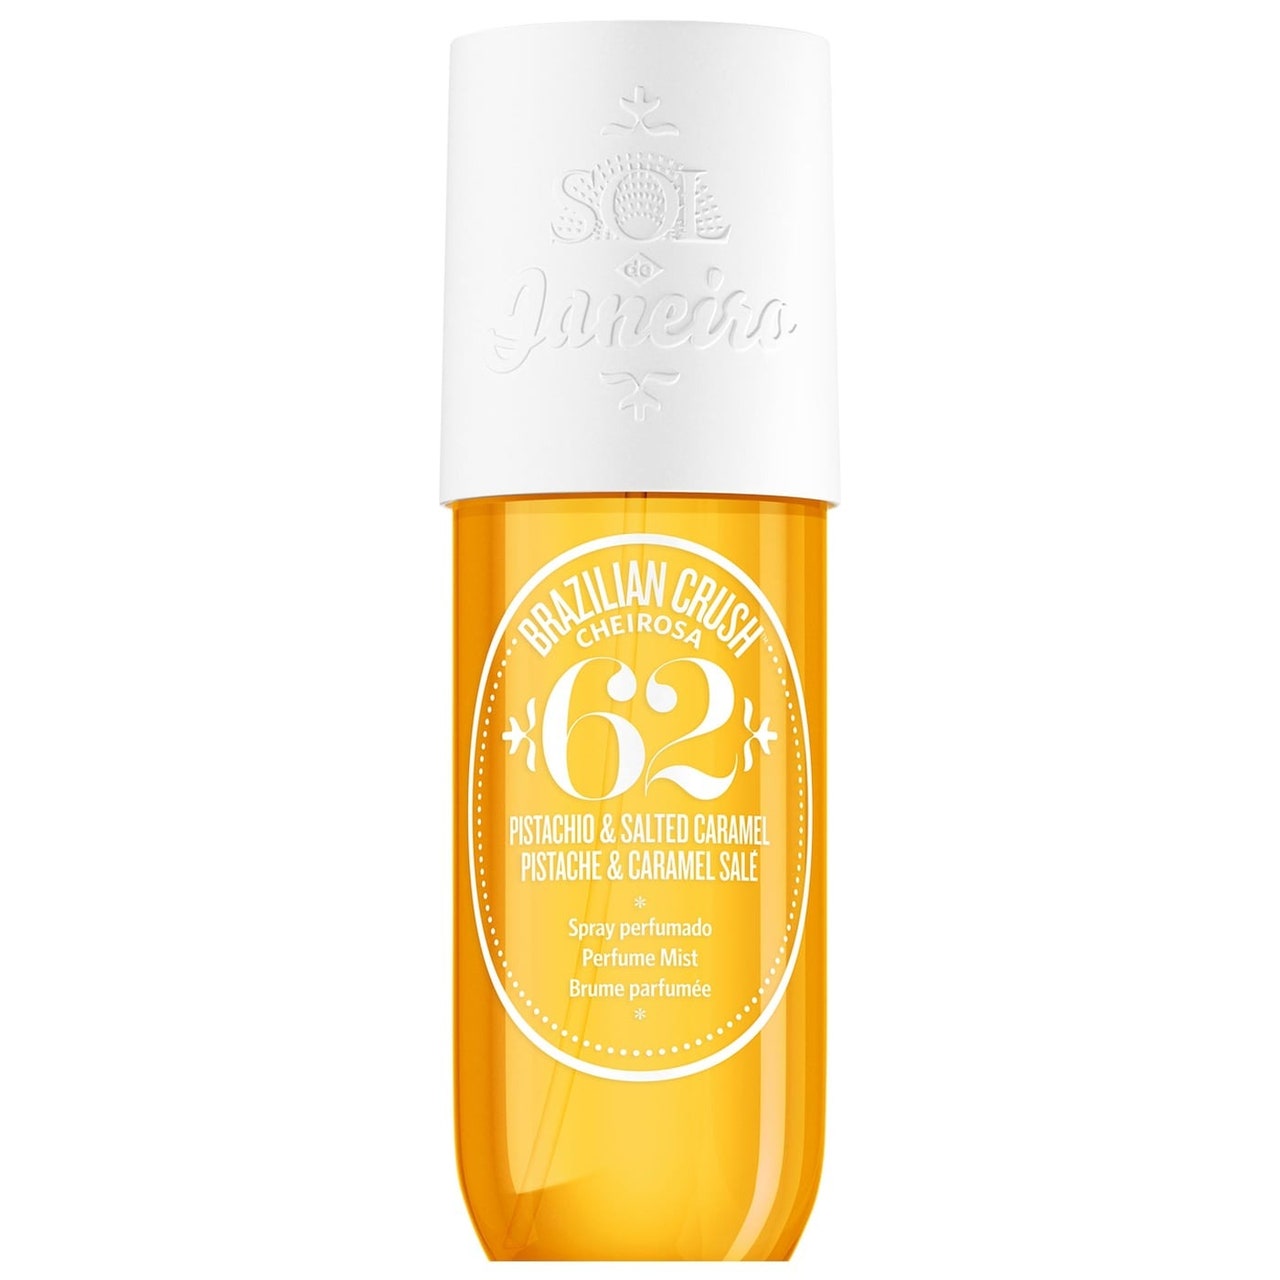 Sol de Janeiro Brazilian Crush Cheirosa '62 Perfume Mist, gelbe Sprühflasche mit Körperspray und weißer Kappe auf weißem Hintergrund